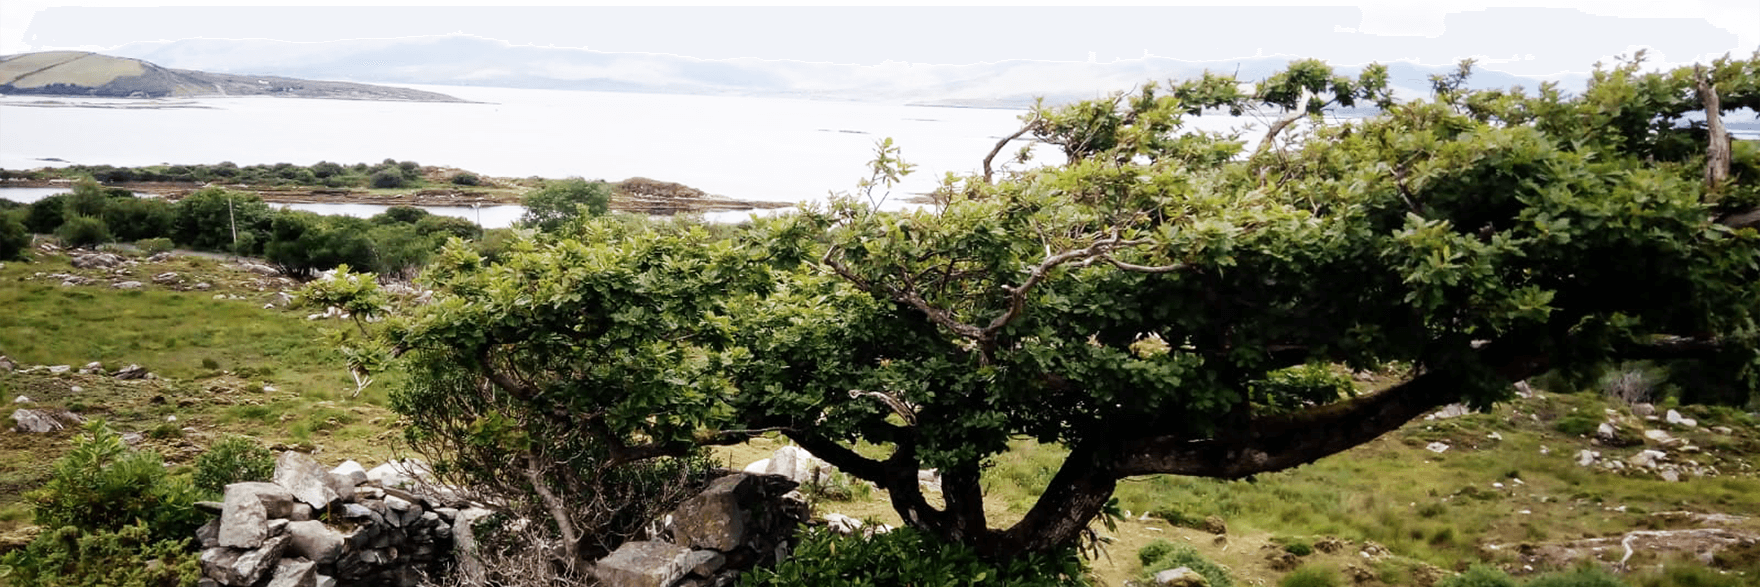 Holly tree in Ireland